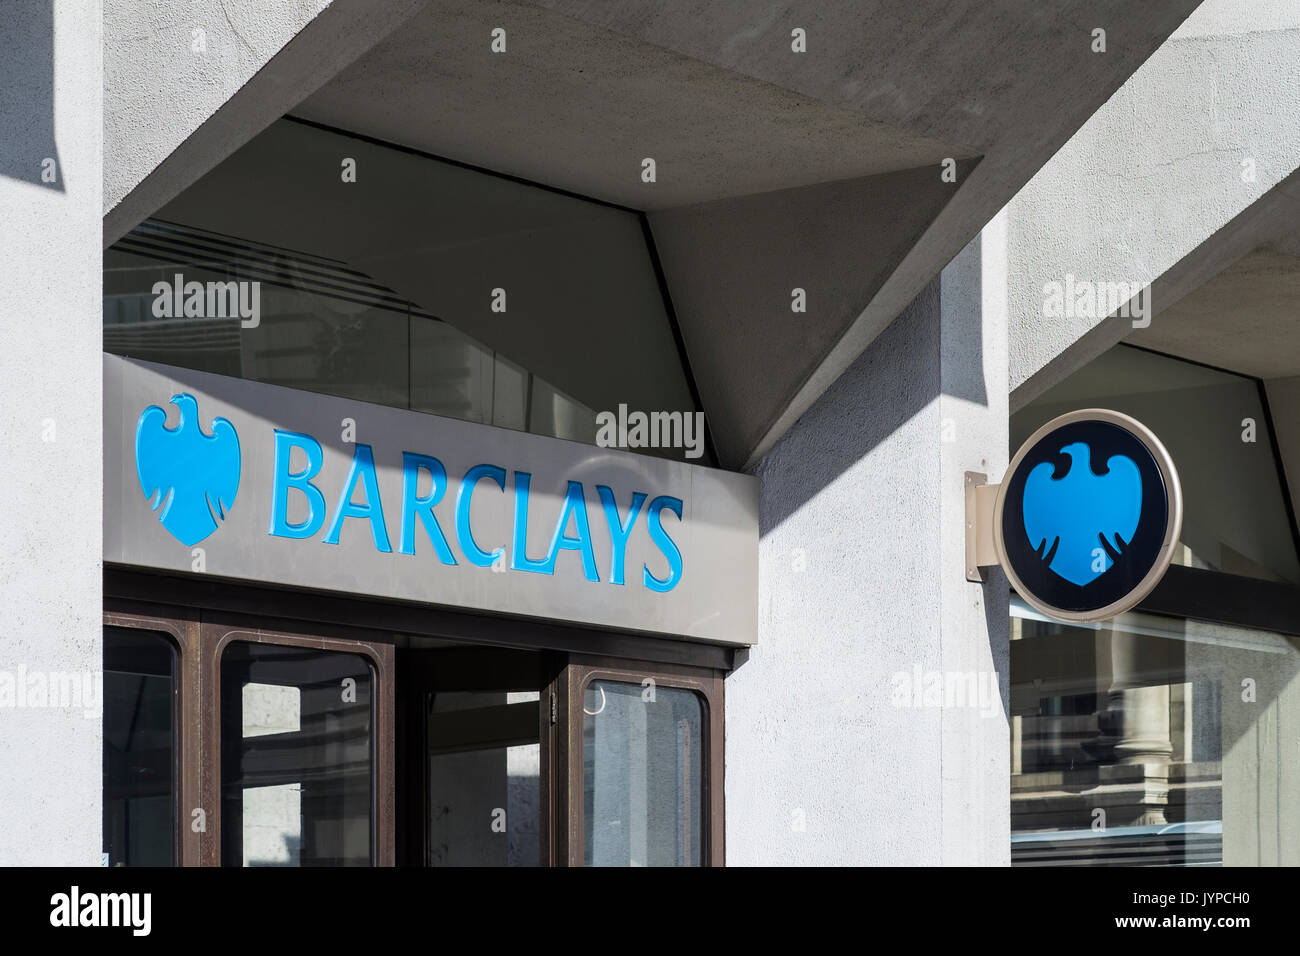 La direction de la Barclays Bank/avec la signalisation, Londres, Angleterre, Royaume-Uni Banque D'Images